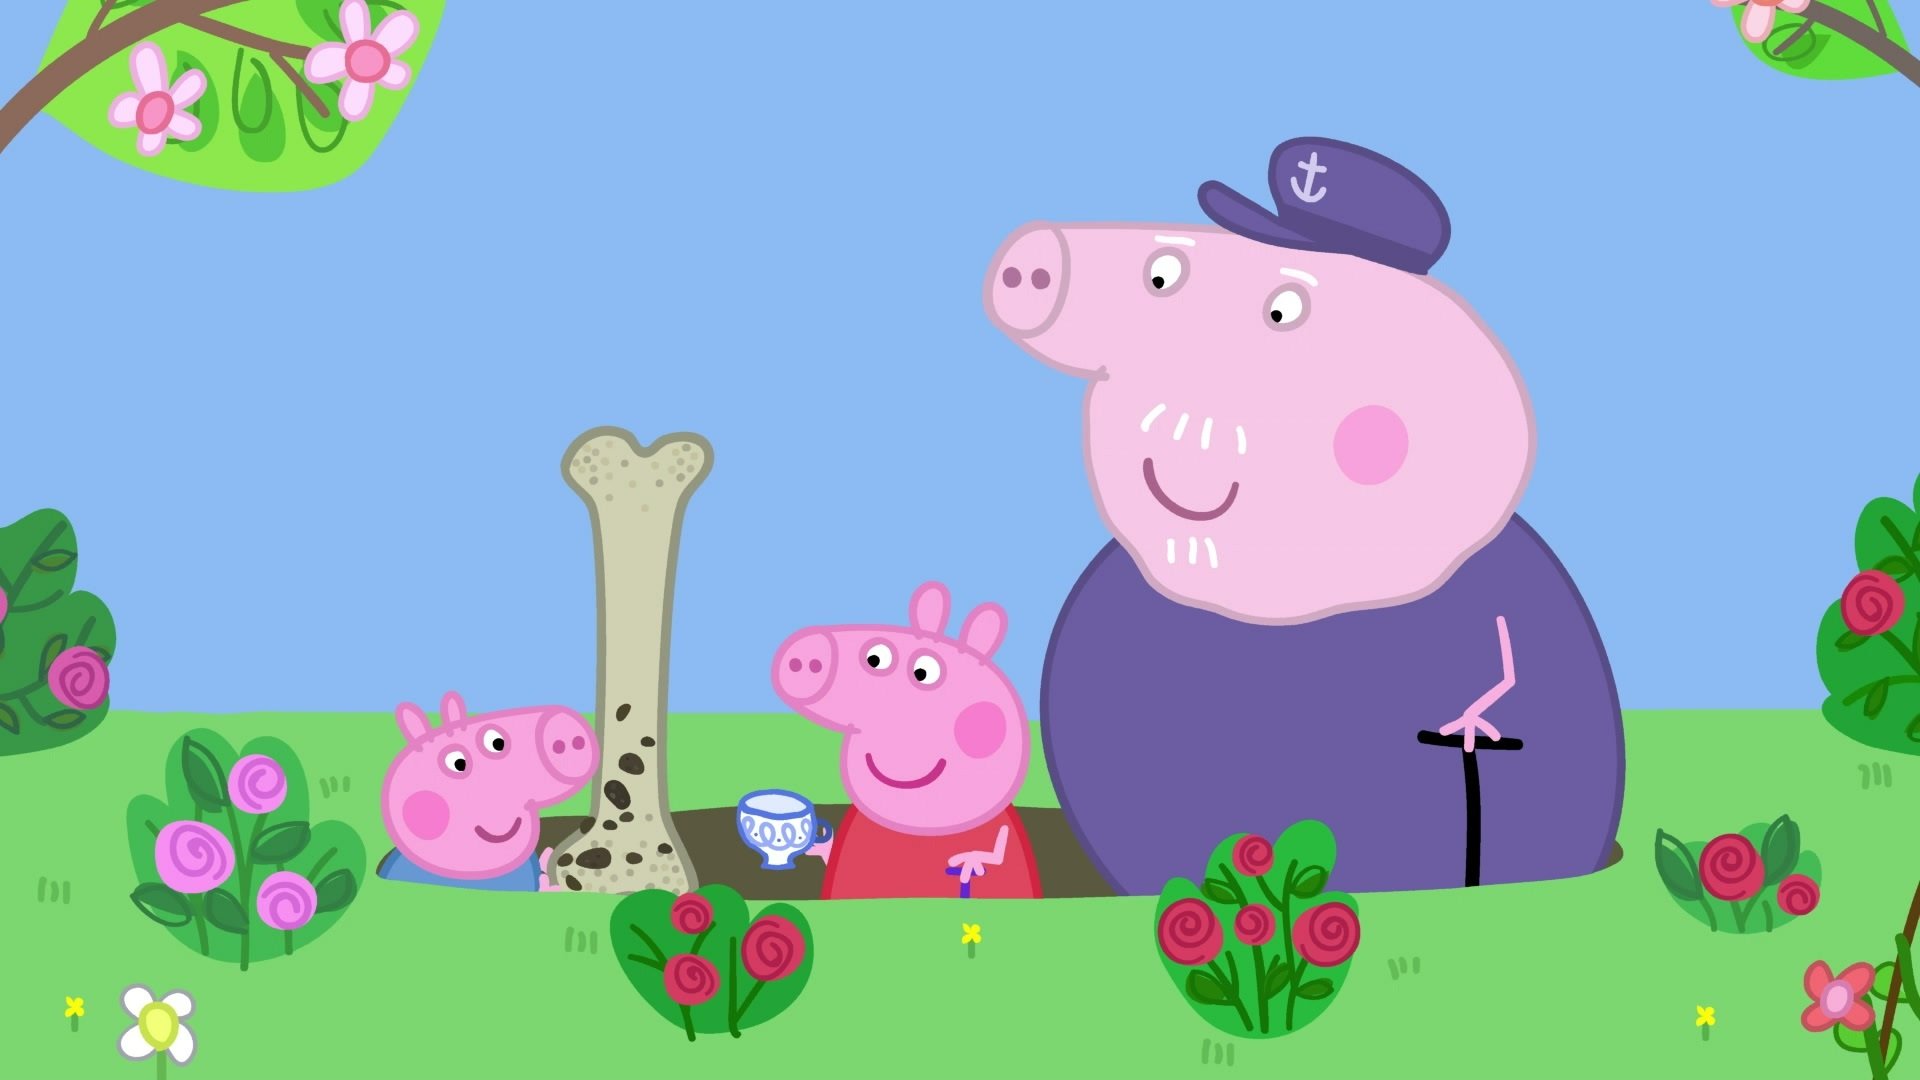 watch free peppa pig episodes